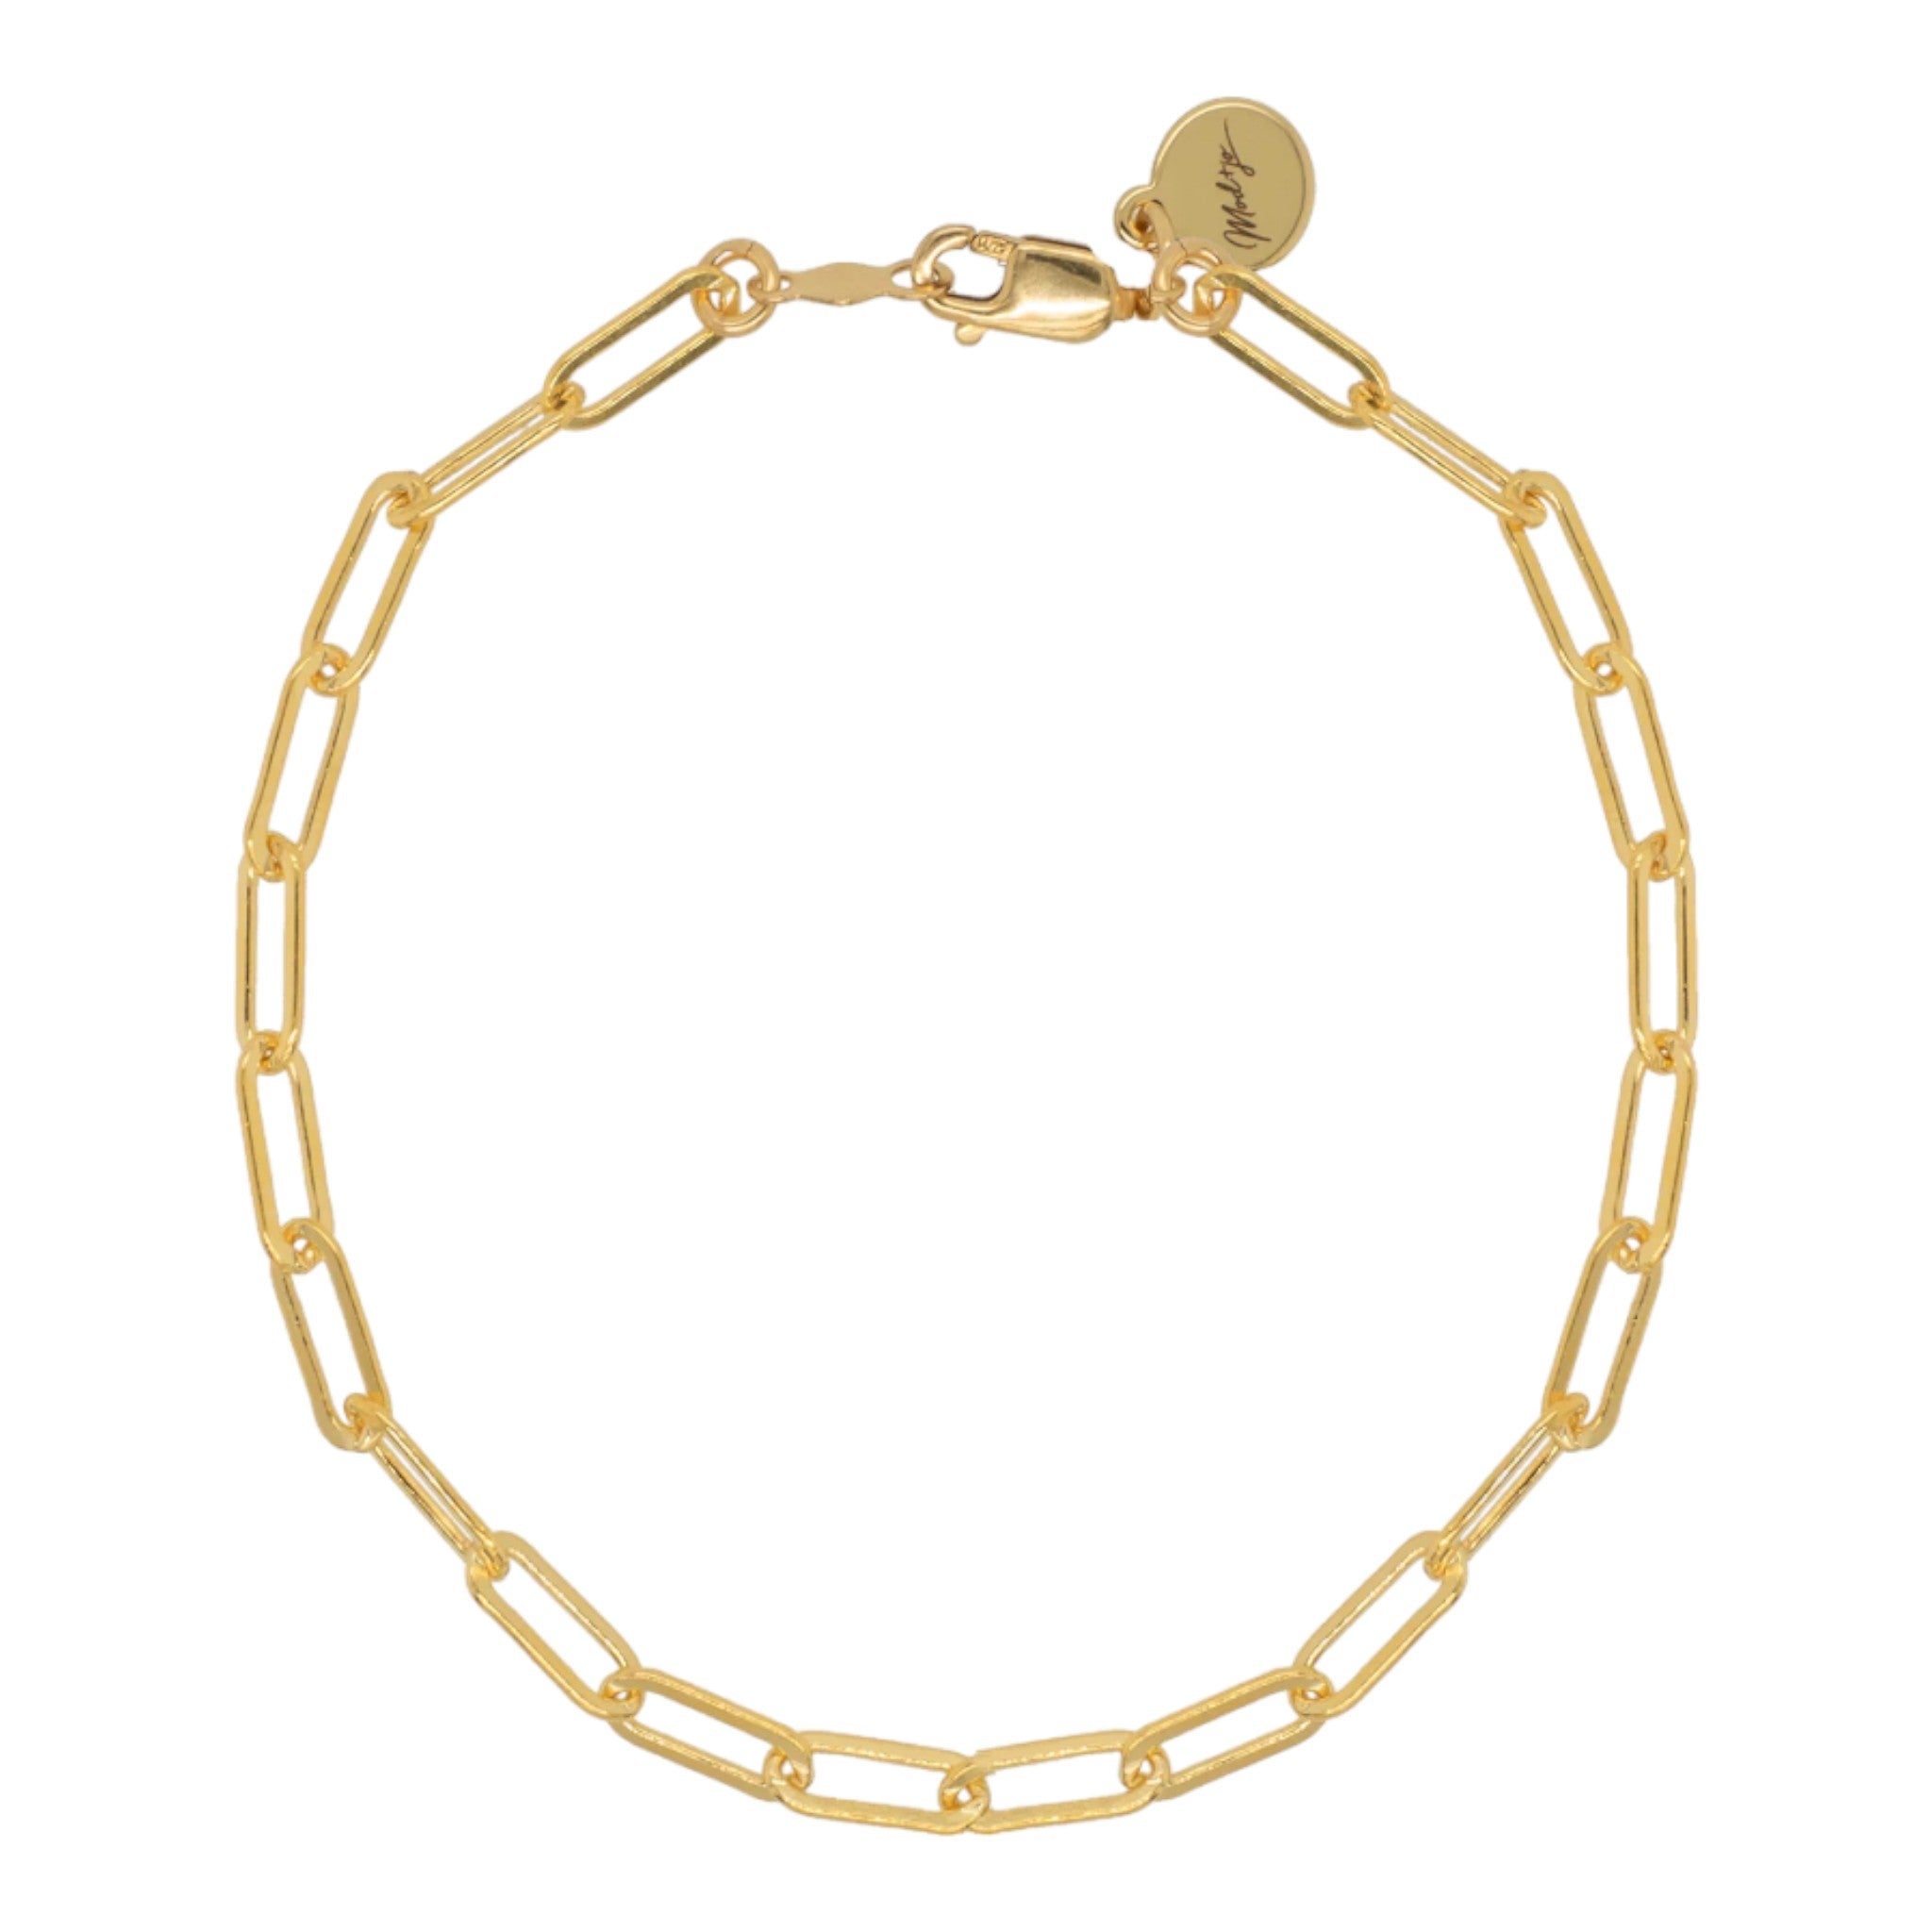 Mod + Jo - Charlie Paperclip Chain Bracelet - 14k Gold Filled